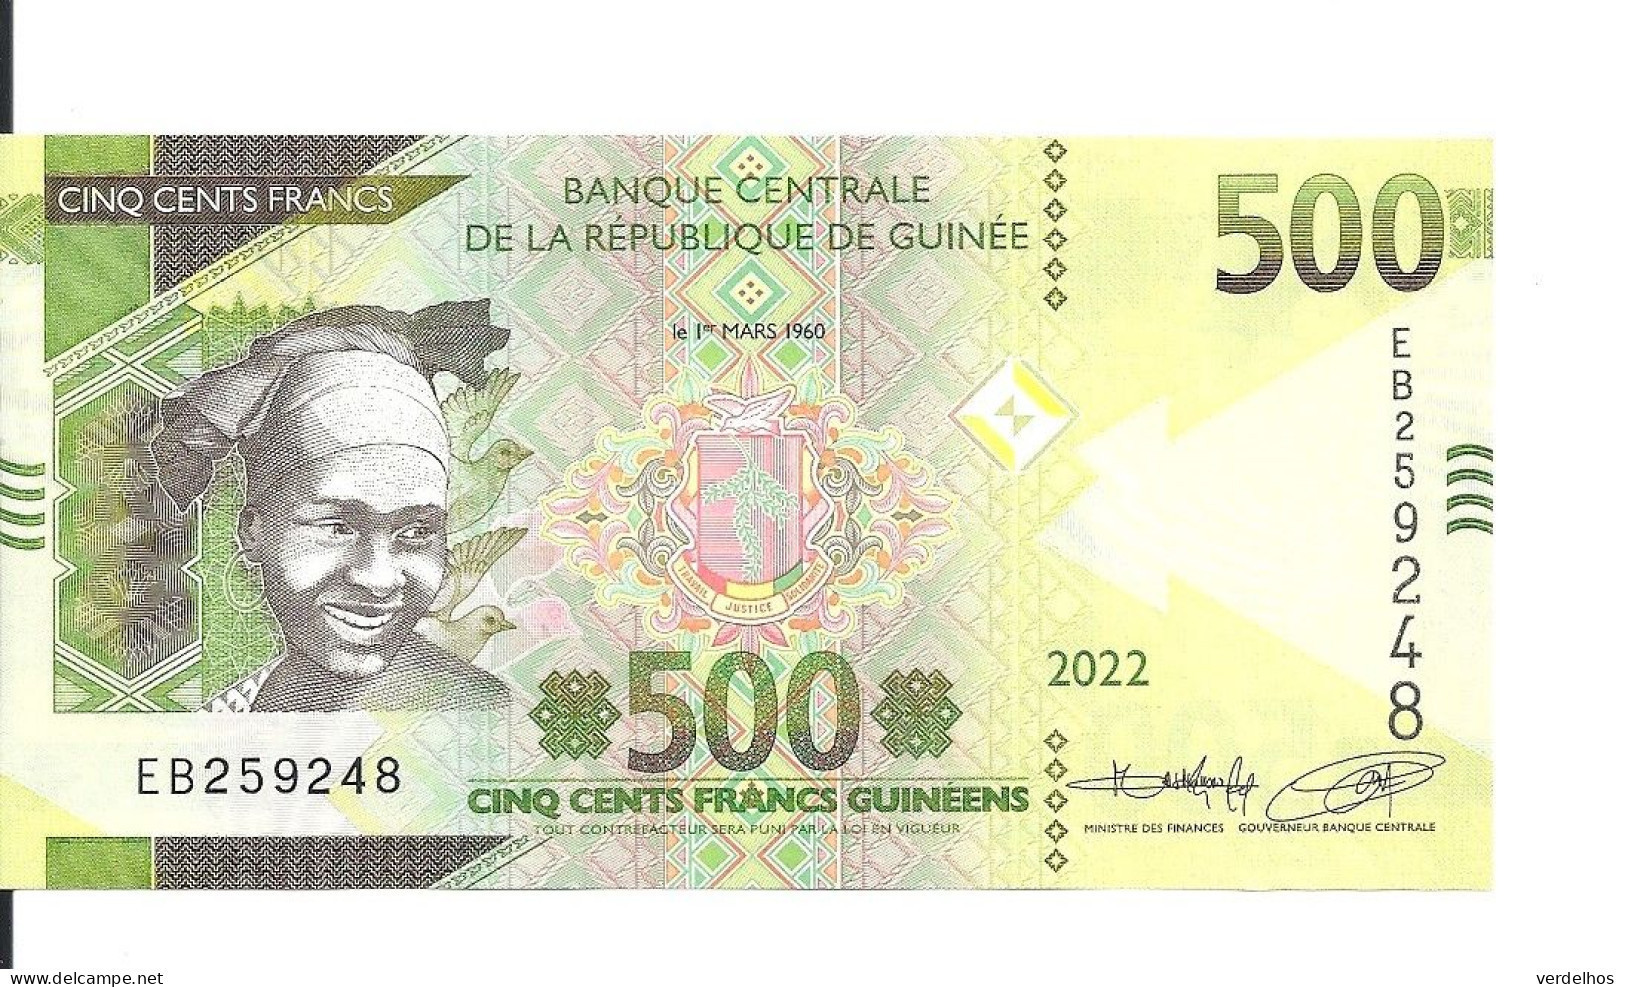 GUINEE 500 FRANCS 2022 UNC P 51 B - Guinea